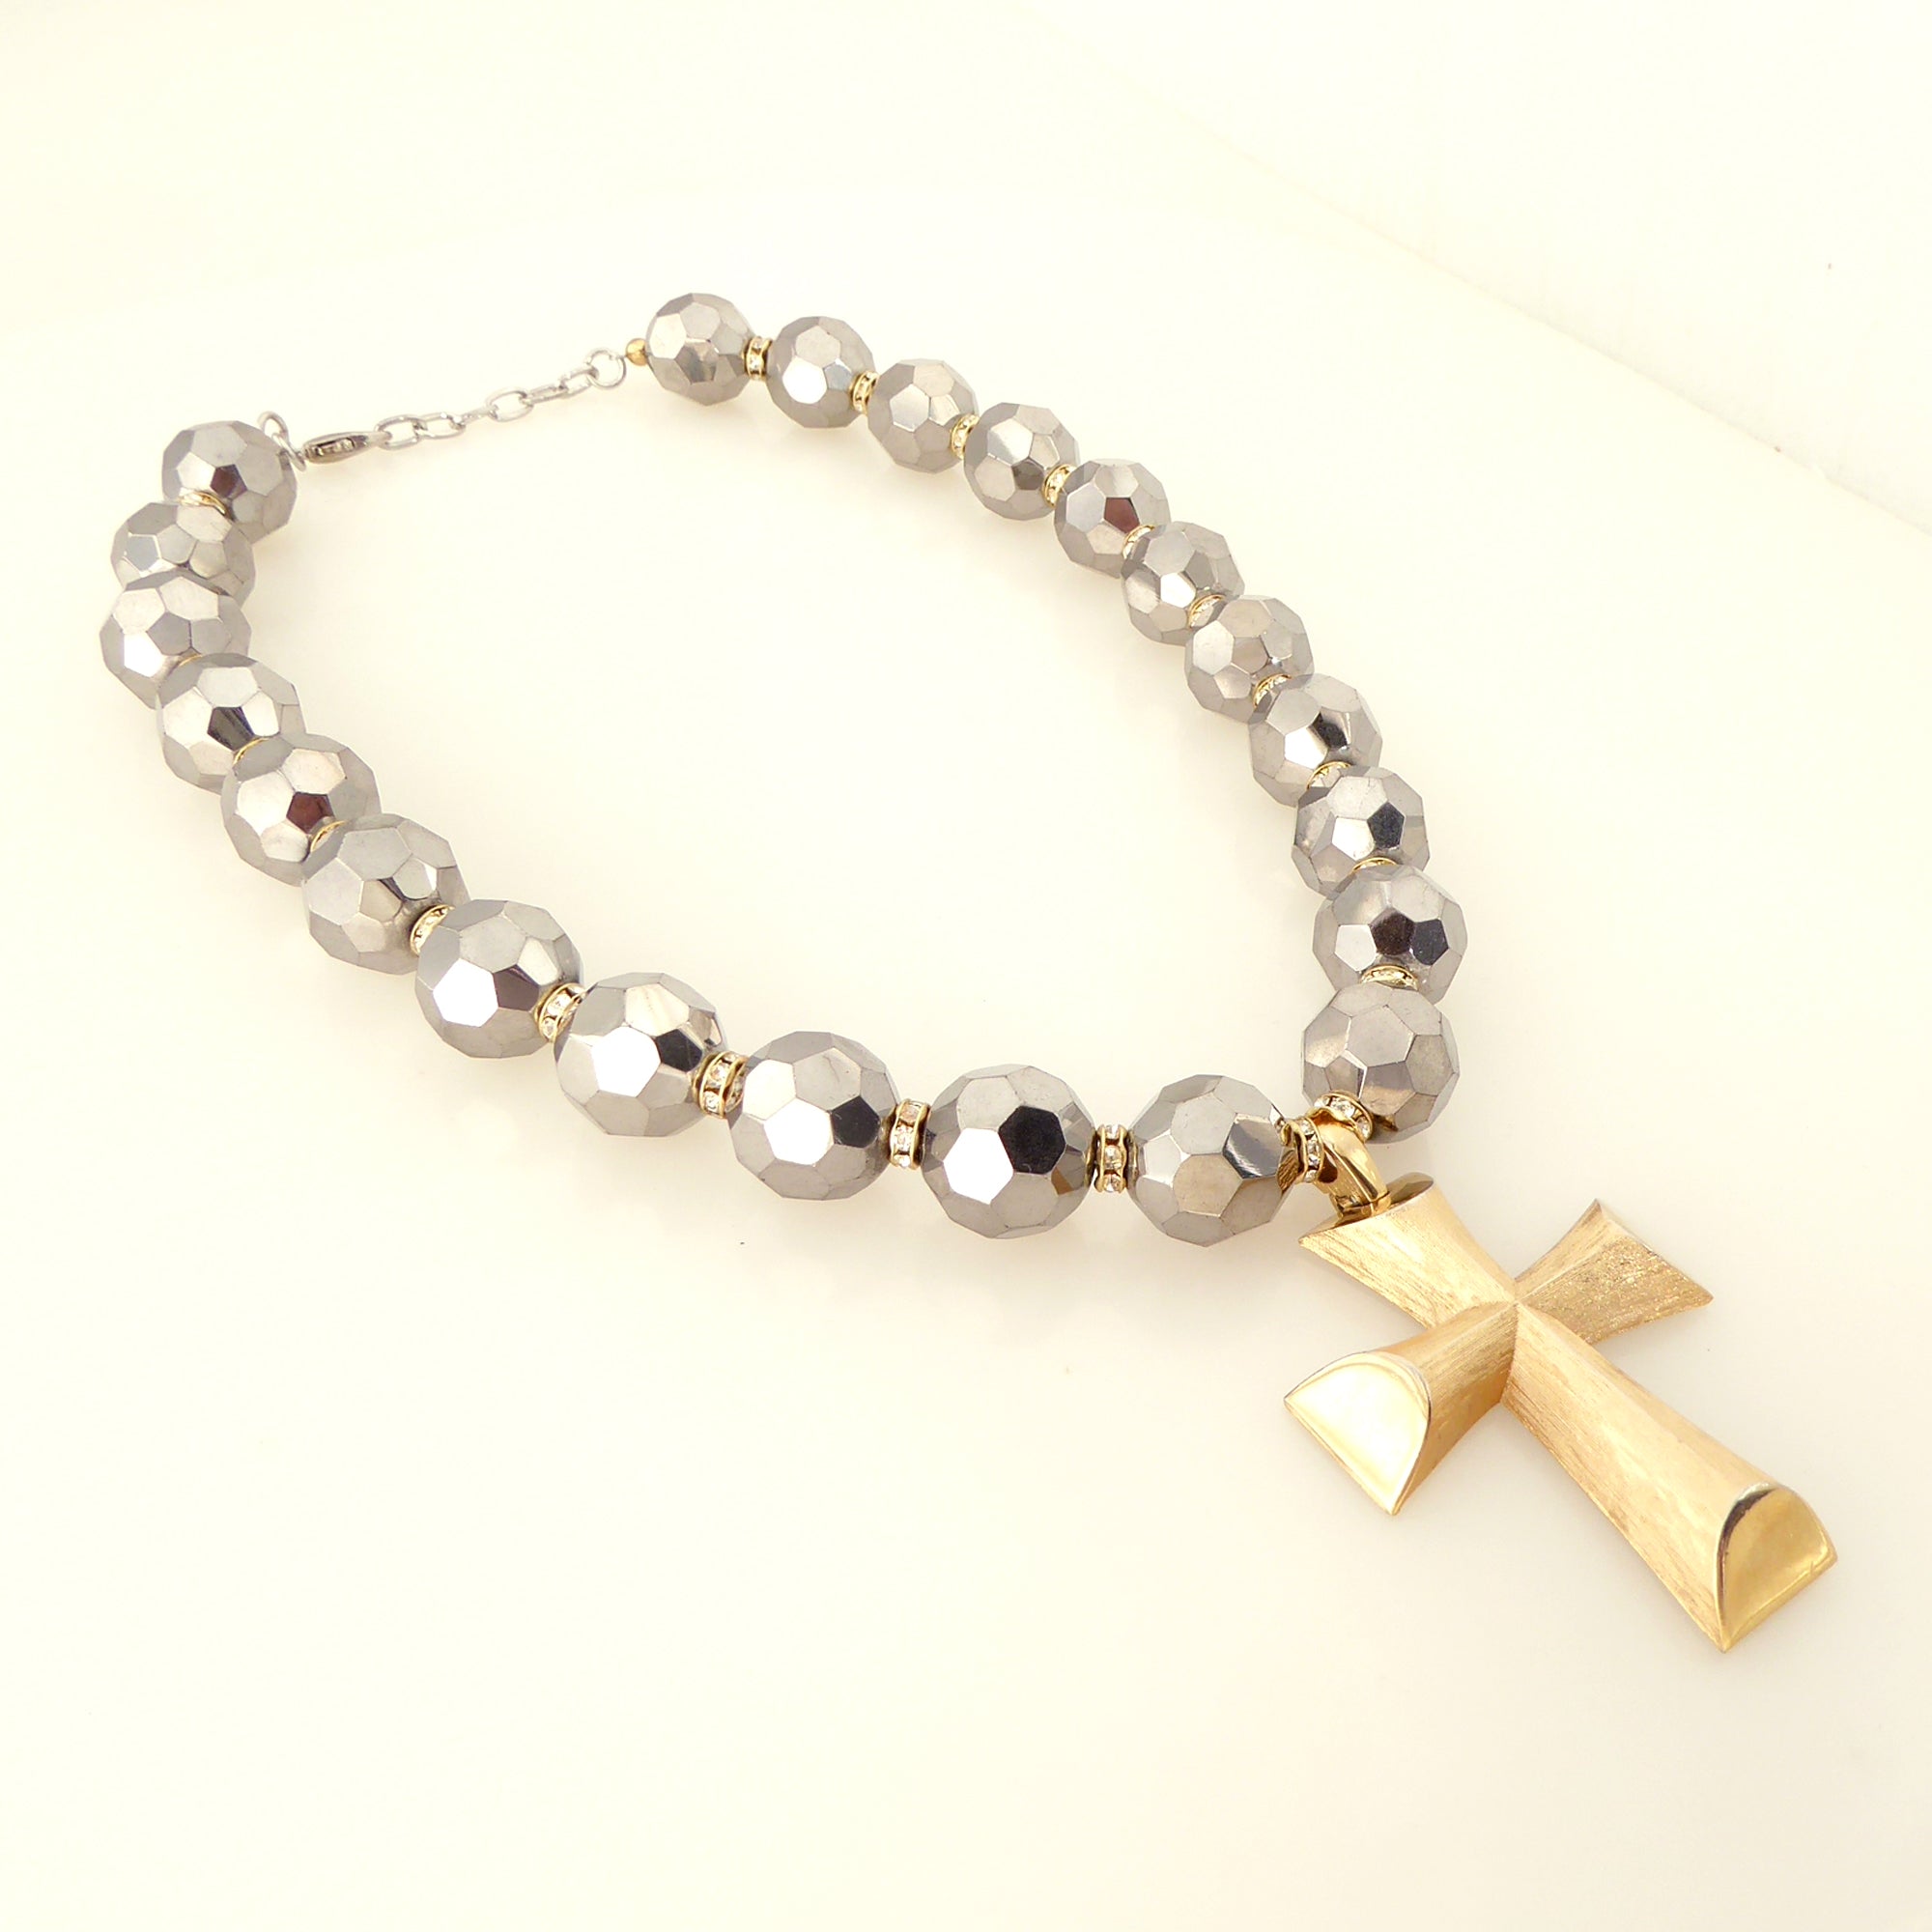  Vintage gold cross necklace by Jenny Dayco 2